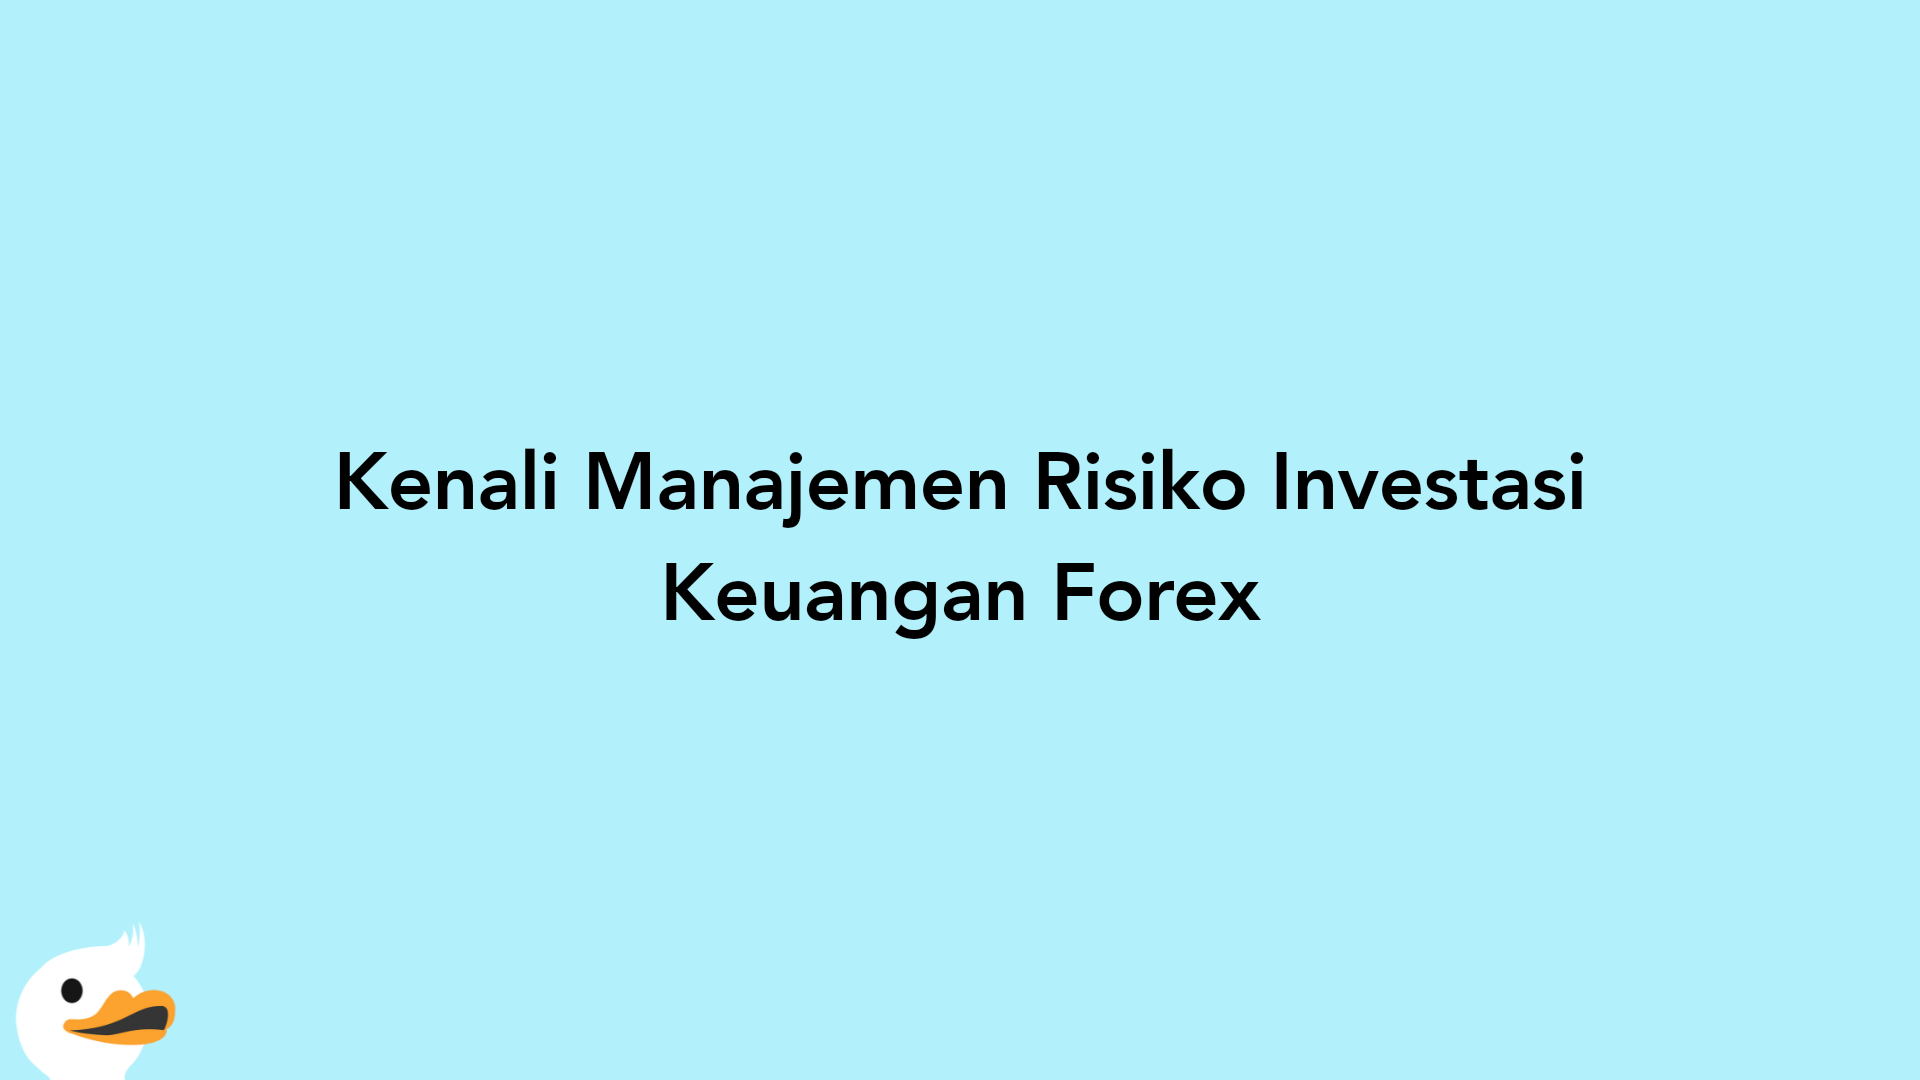 Kenali Manajemen Risiko Investasi Keuangan Forex